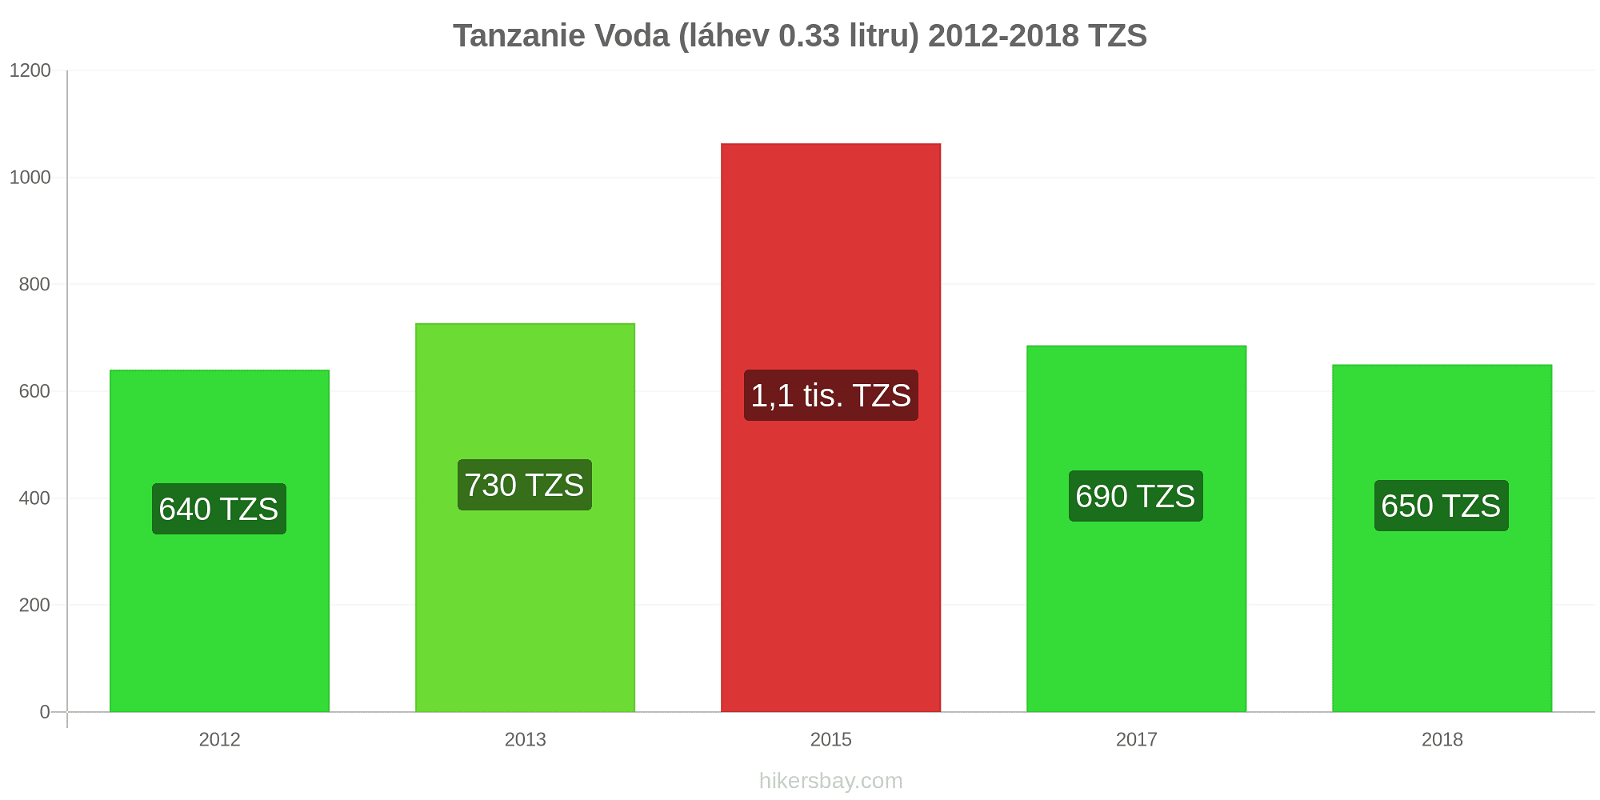 Tanzanie změny cen Voda (láhev 0.33 litru) hikersbay.com